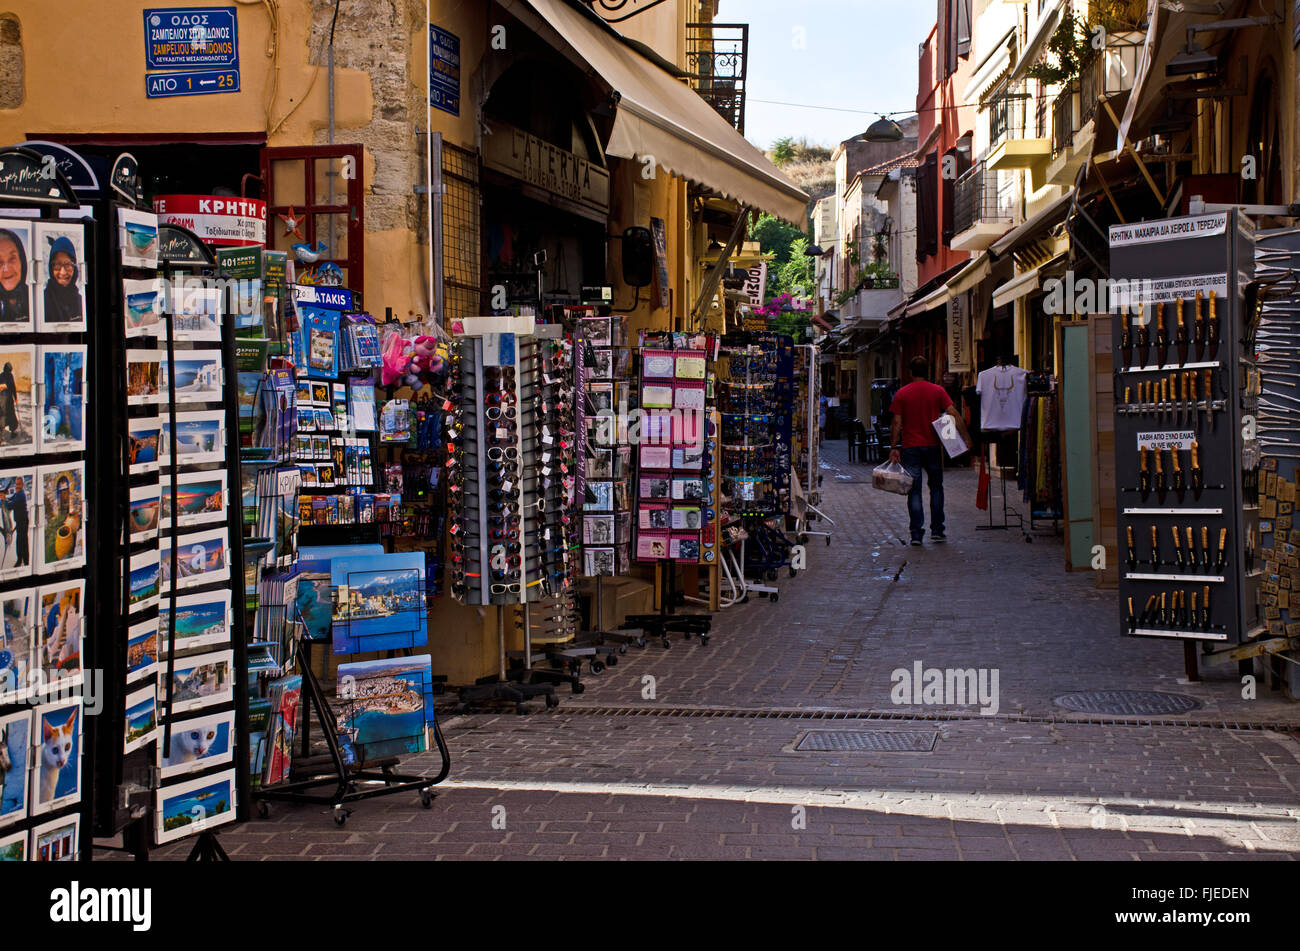 Strada stretta con negozi di souvenir, old town Chania, isola di Creta, Grecia Foto Stock